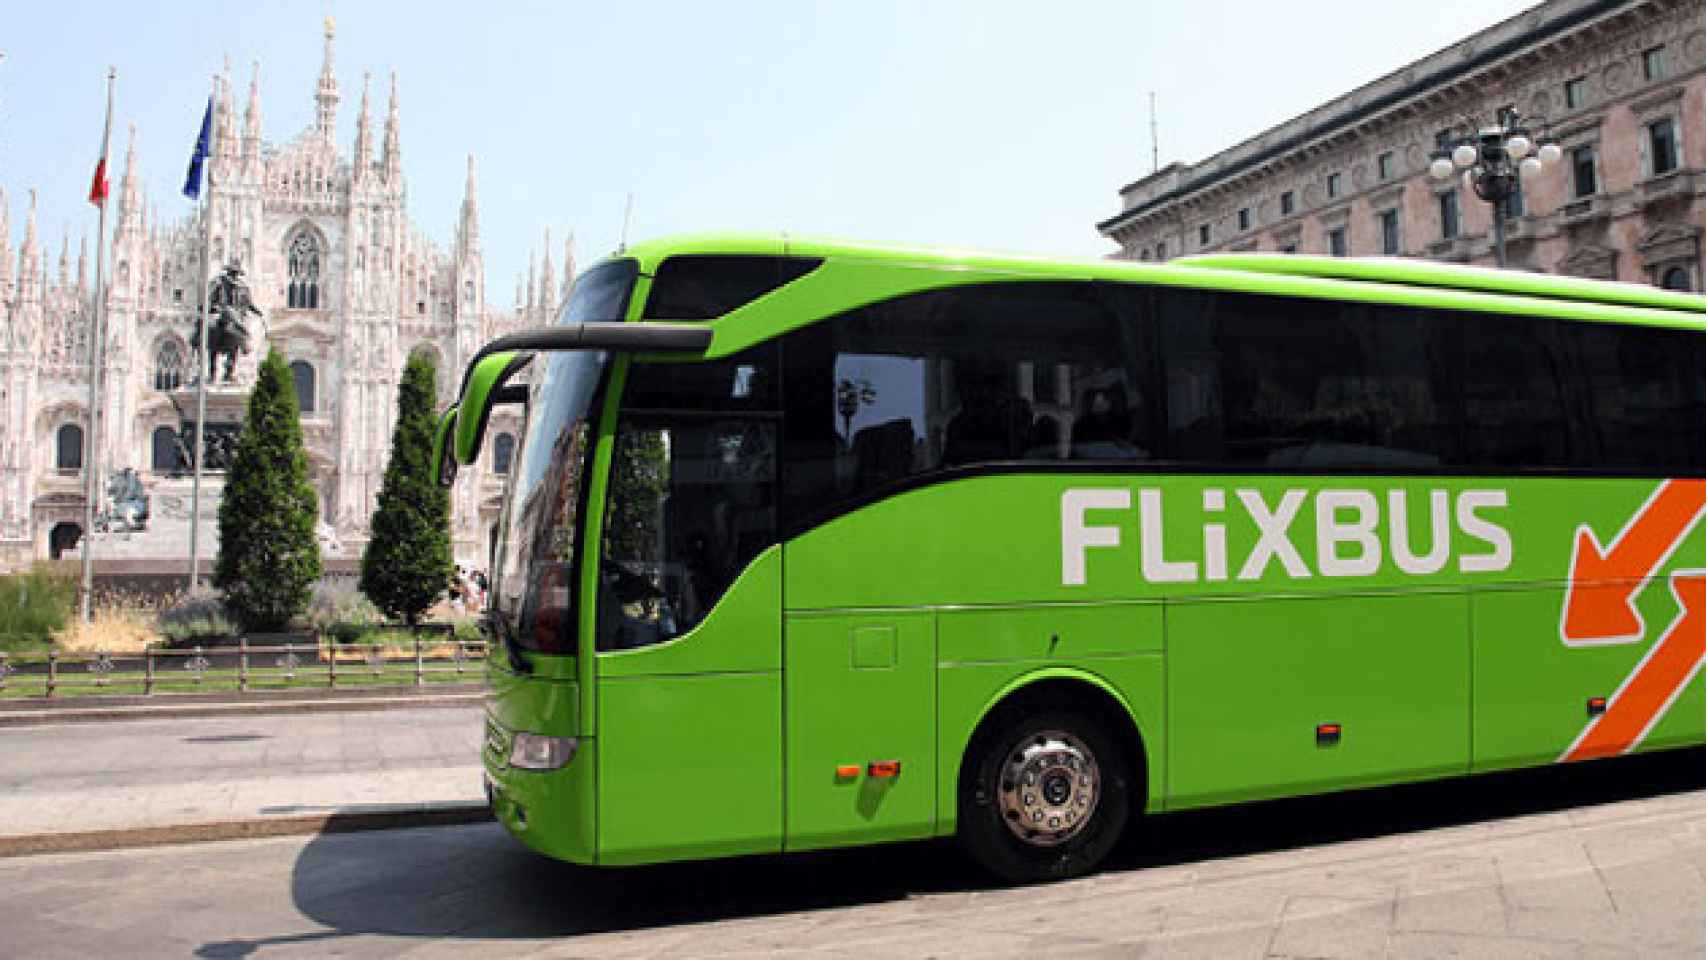 FlixBus opera rutas internacionales de bajo coste / CG